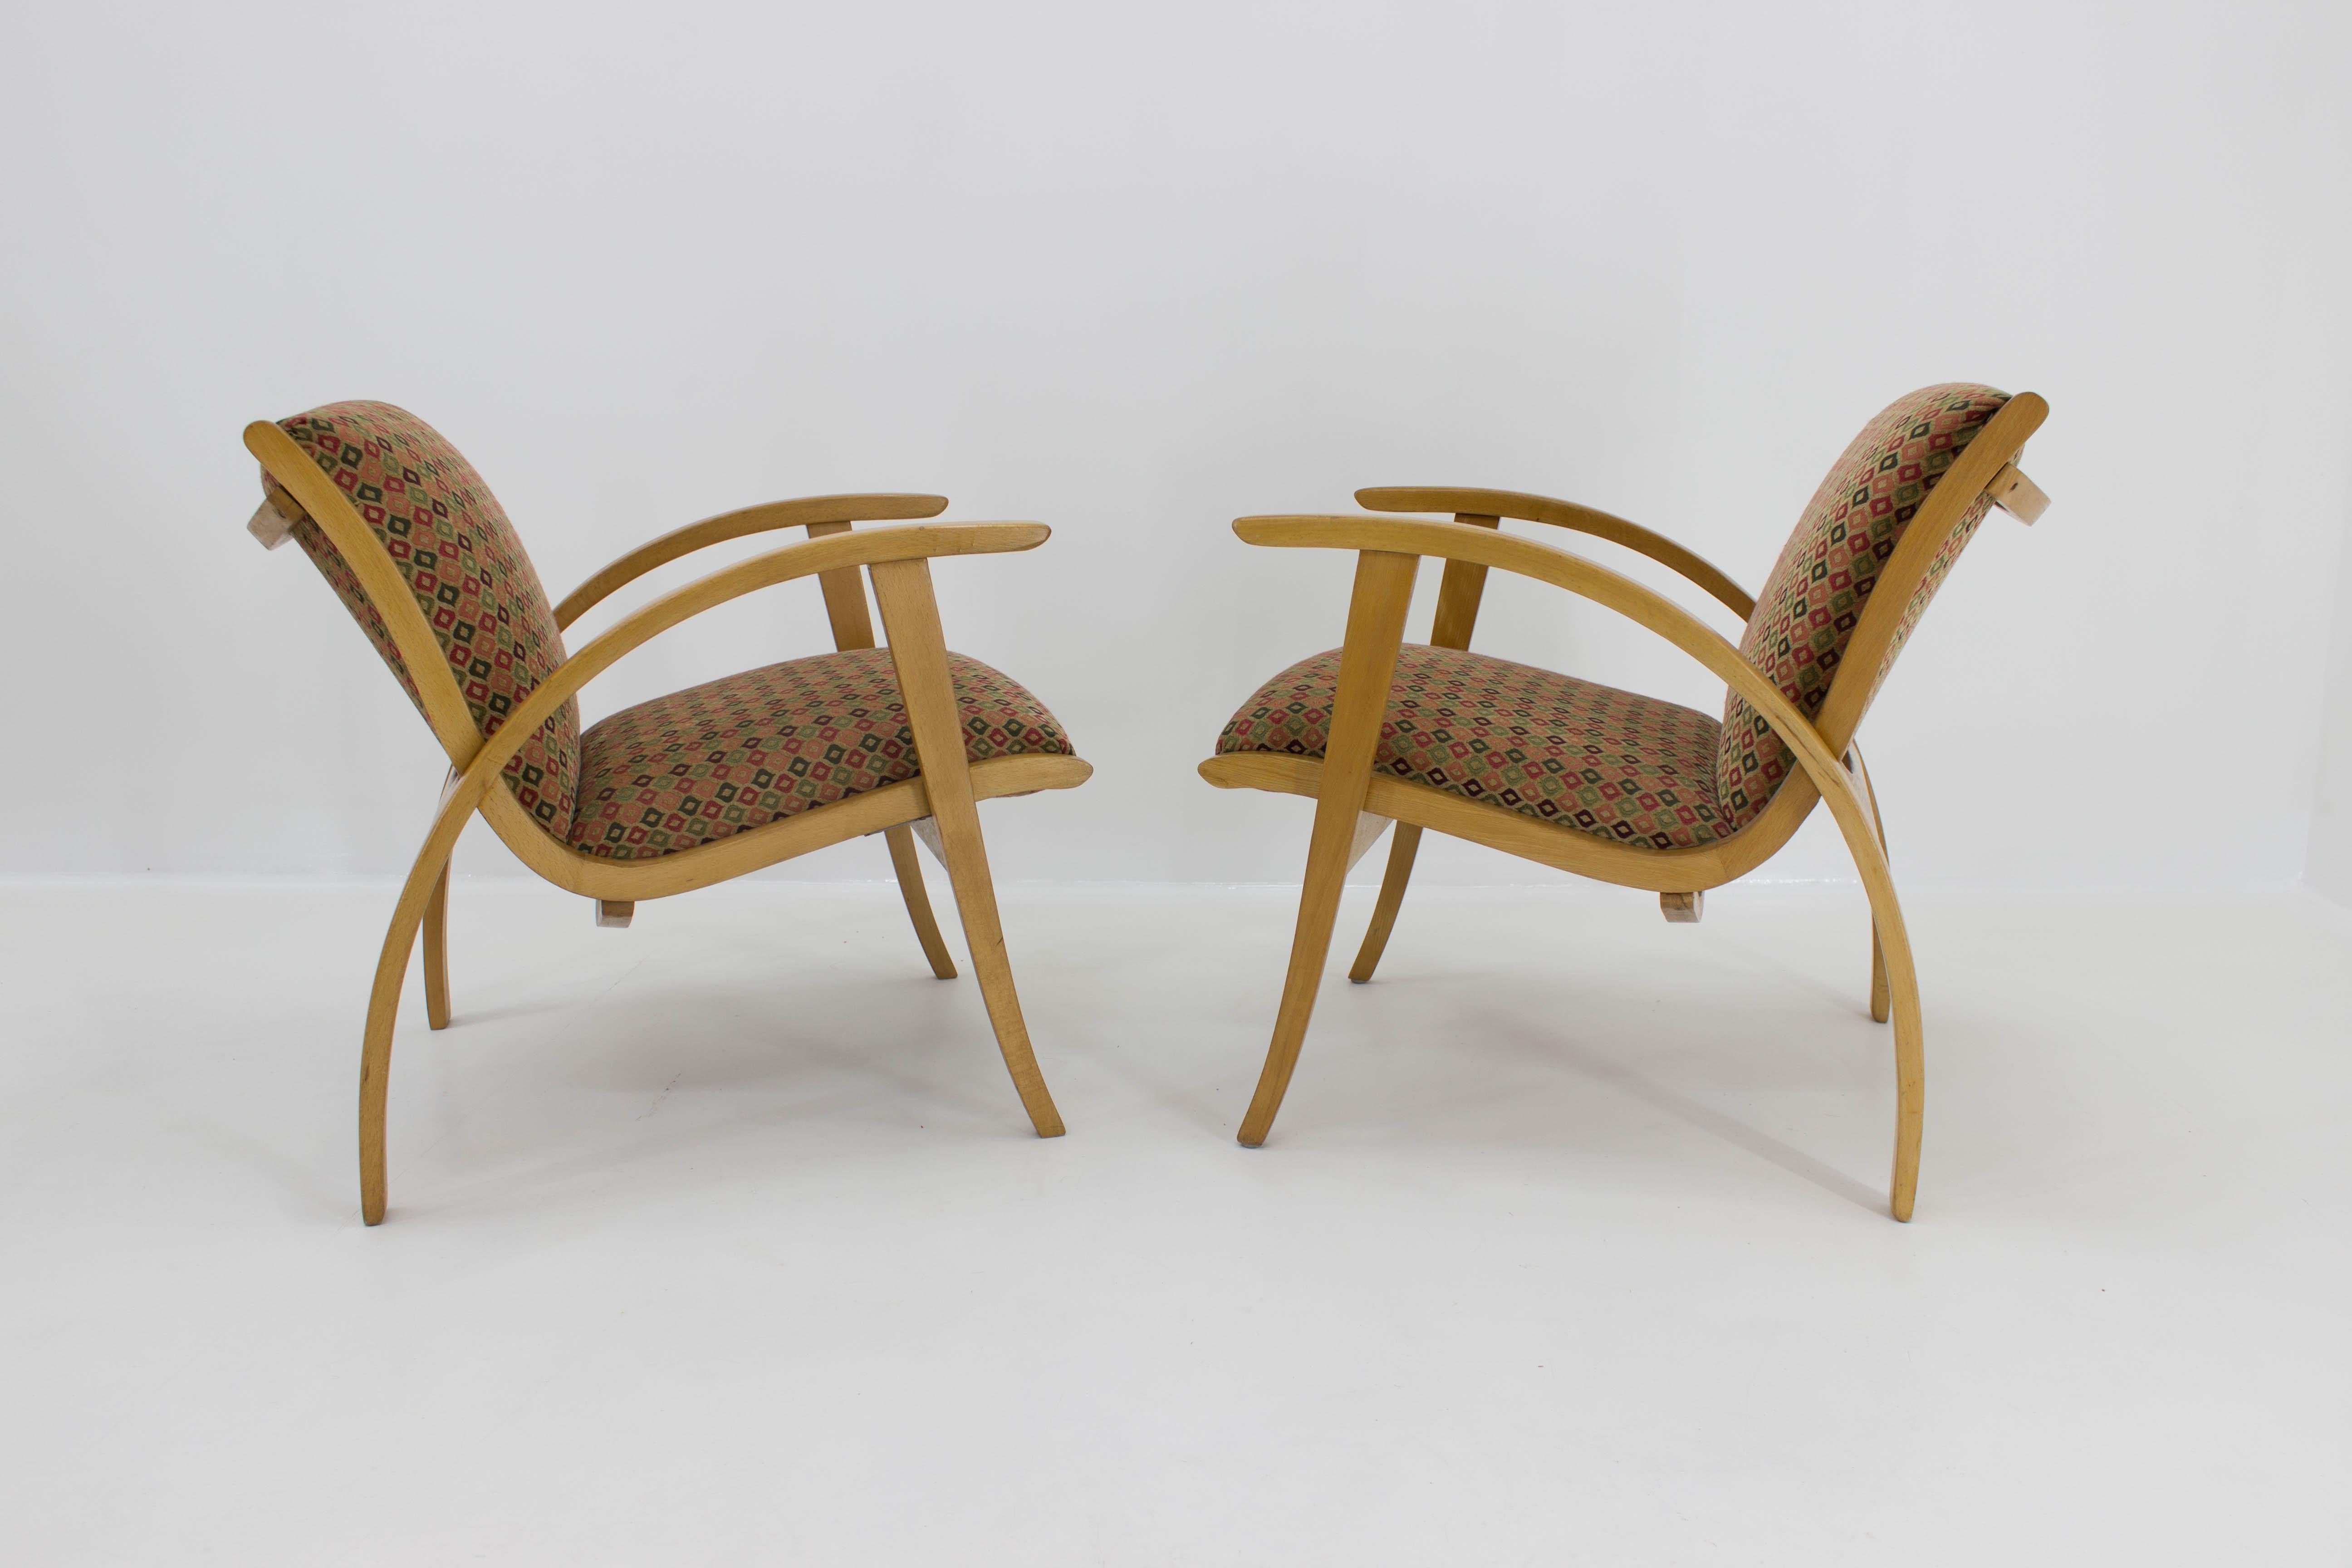 Zwei charmante und bequeme Sessel aus der Mitte des Jahrhunderts, neu gepolstert, 1960er Jahre.
Ein Sessel hat feste Beine an einer Unterseite durch Metallstreifen: sehr robust und stabil